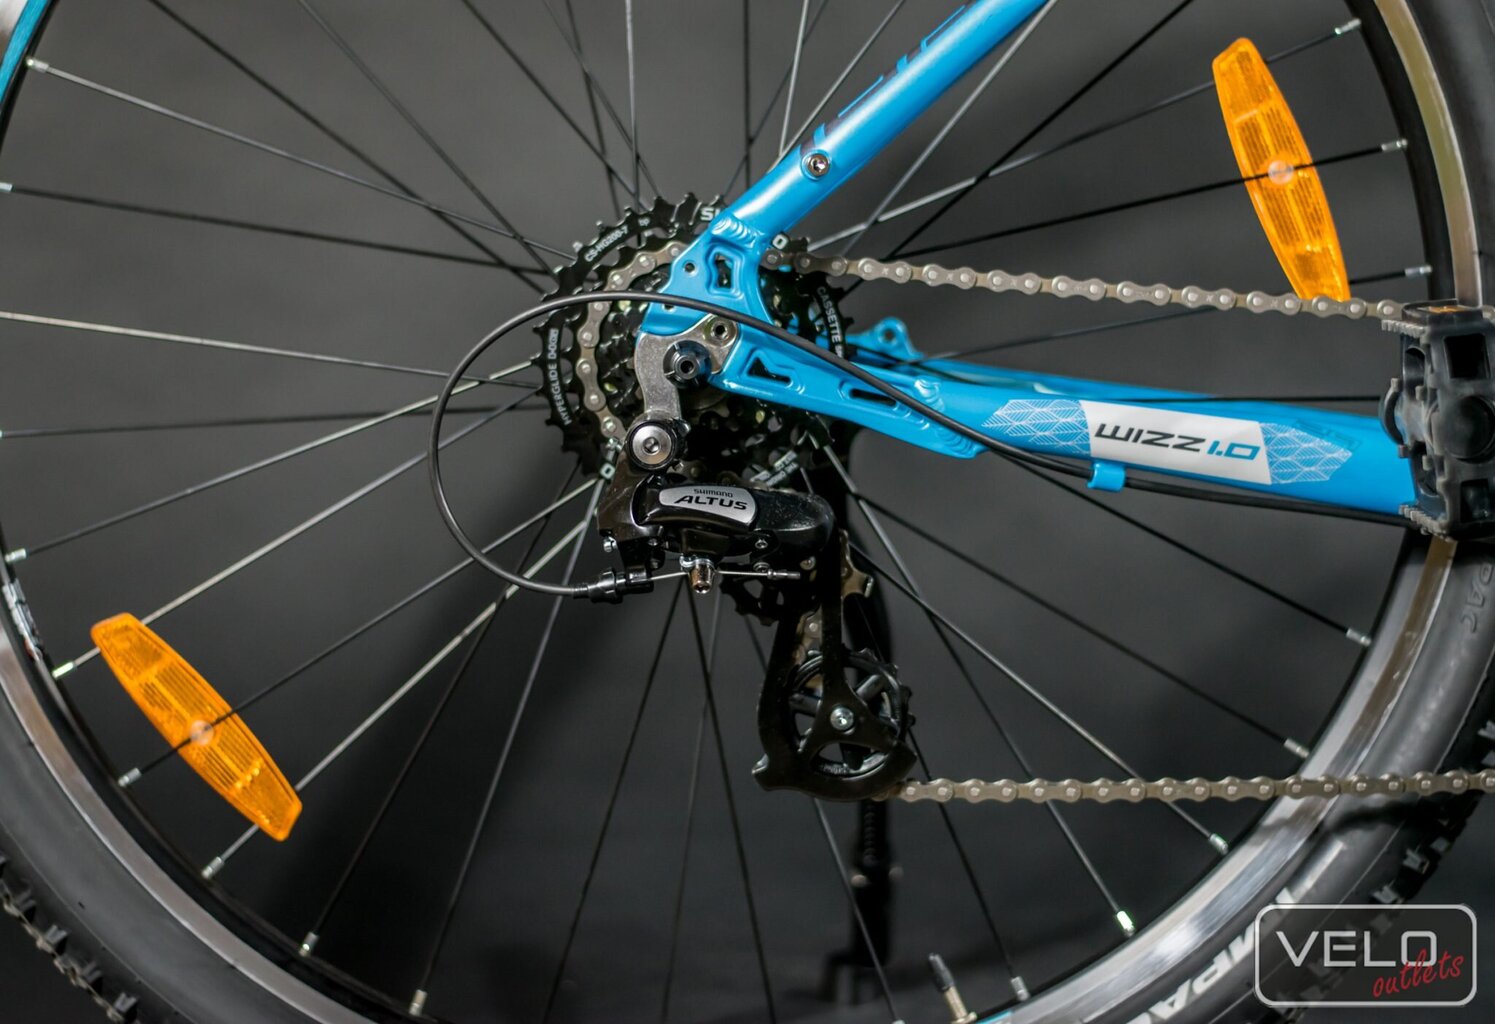 Kalnų dviratis Tabou W WIZZ 29 1.0 mėlynas kaina ir informacija | Dviračiai | pigu.lt